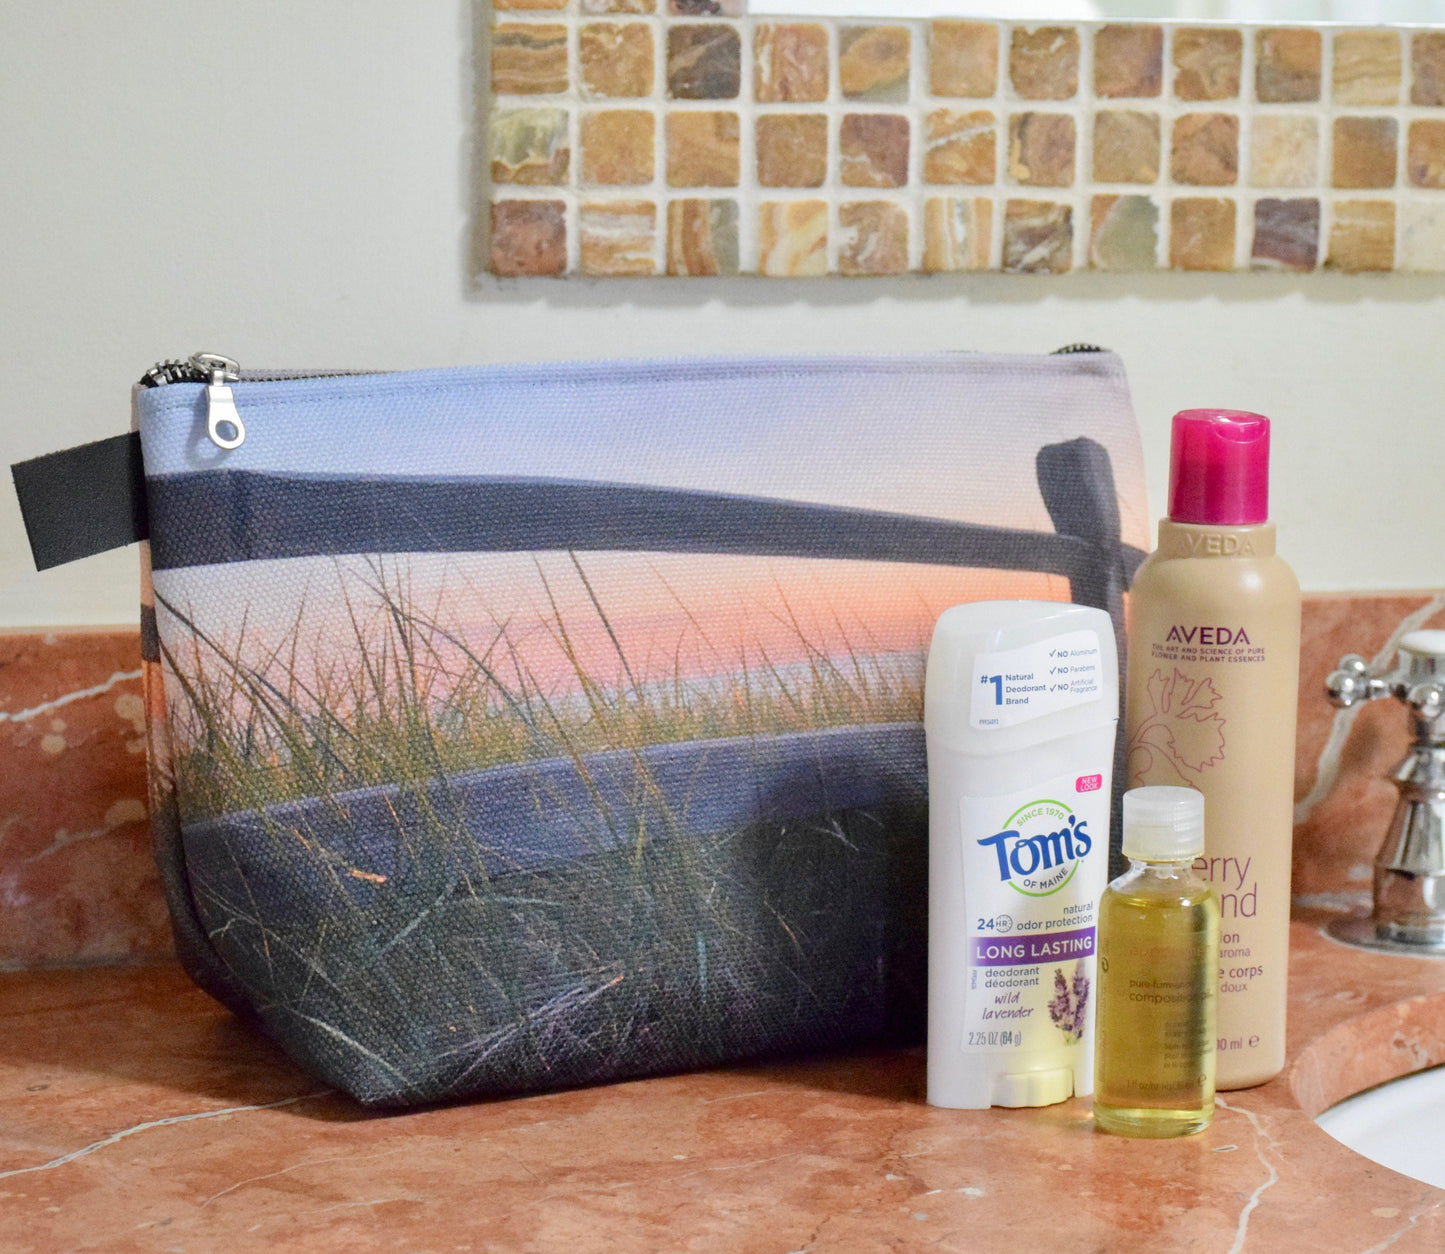 Sunset Beach Makeup Bag - Travel Makeup Bag of the Beach at Sunset